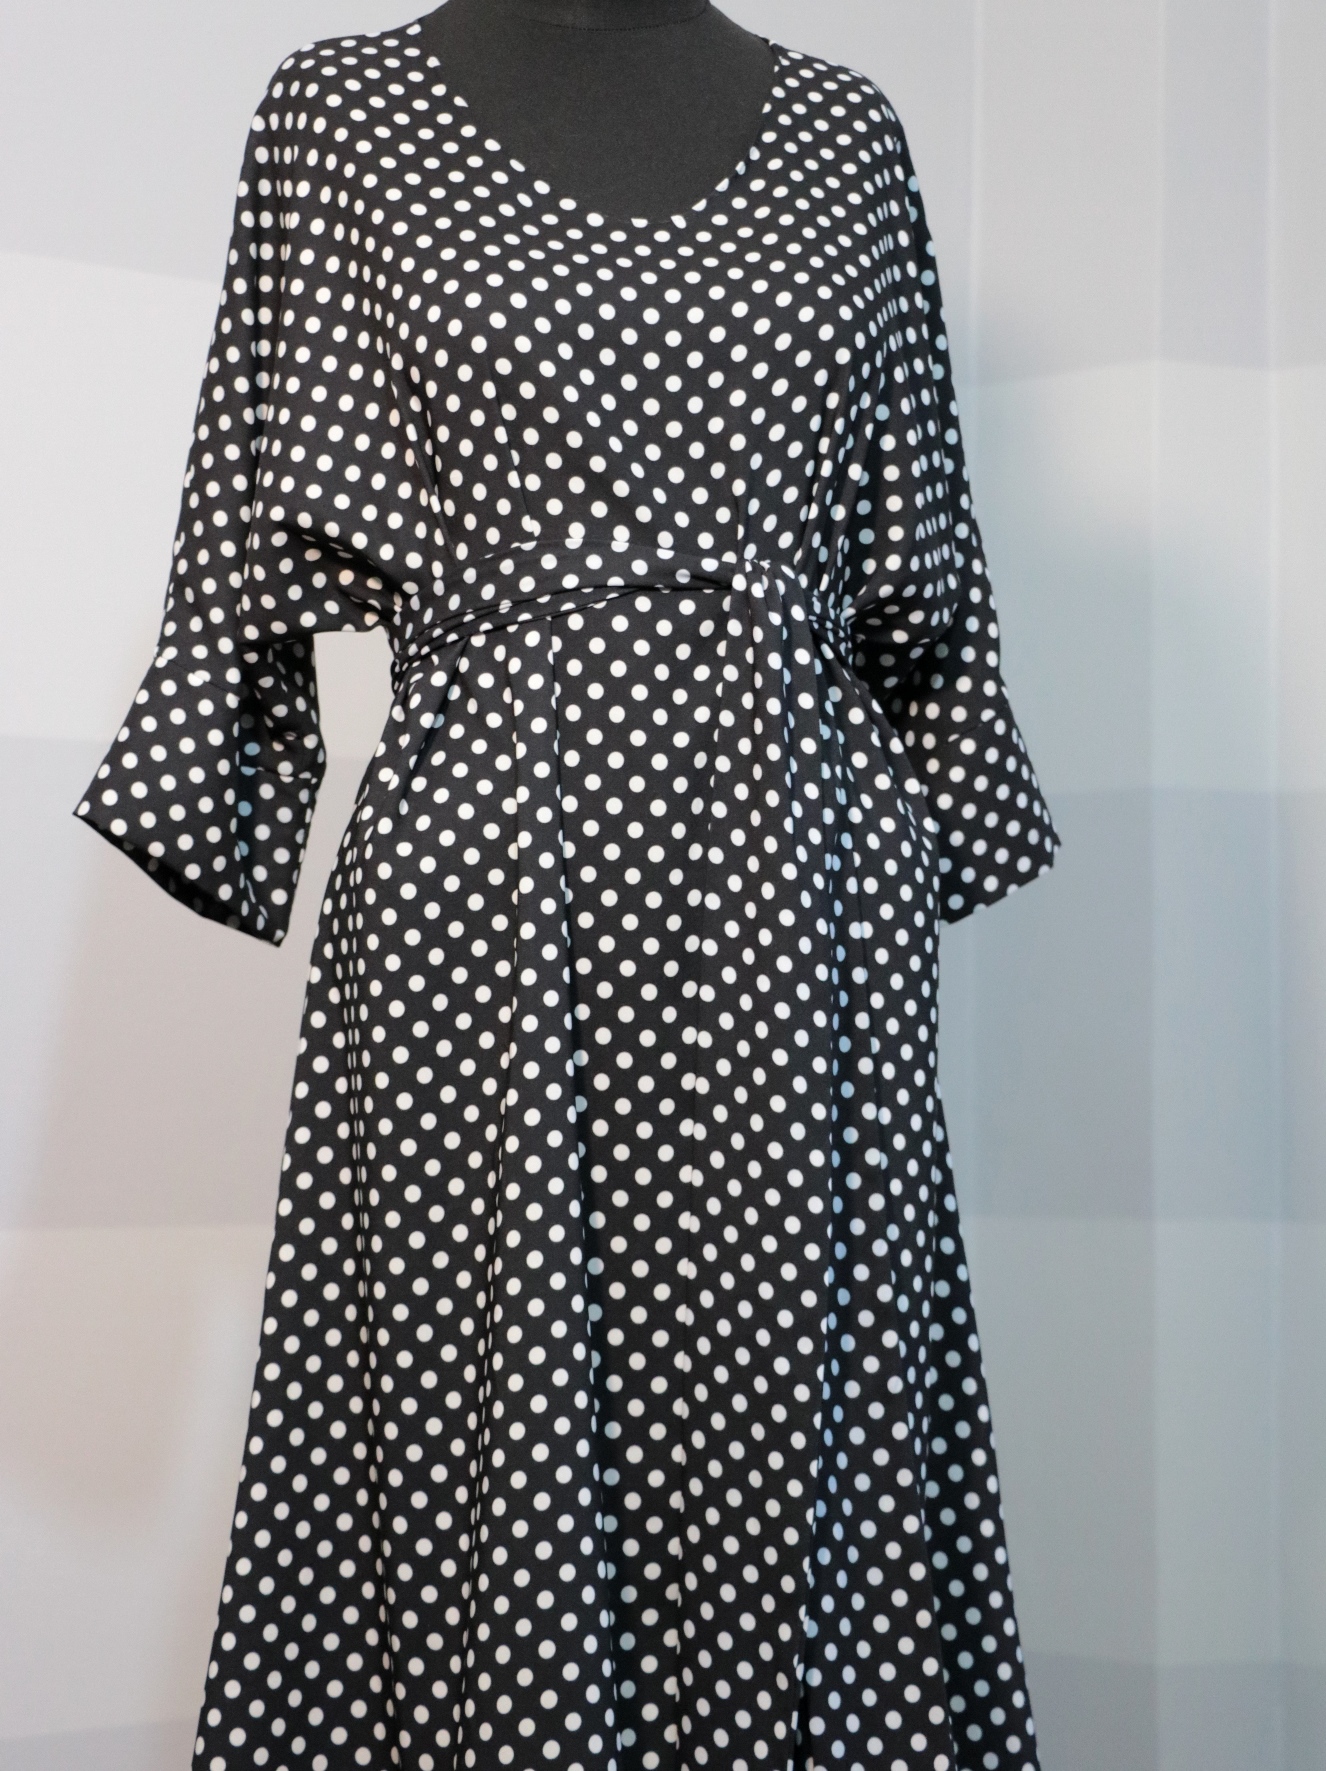 Fotografie pro model – Černé šaty s bílými puntíky